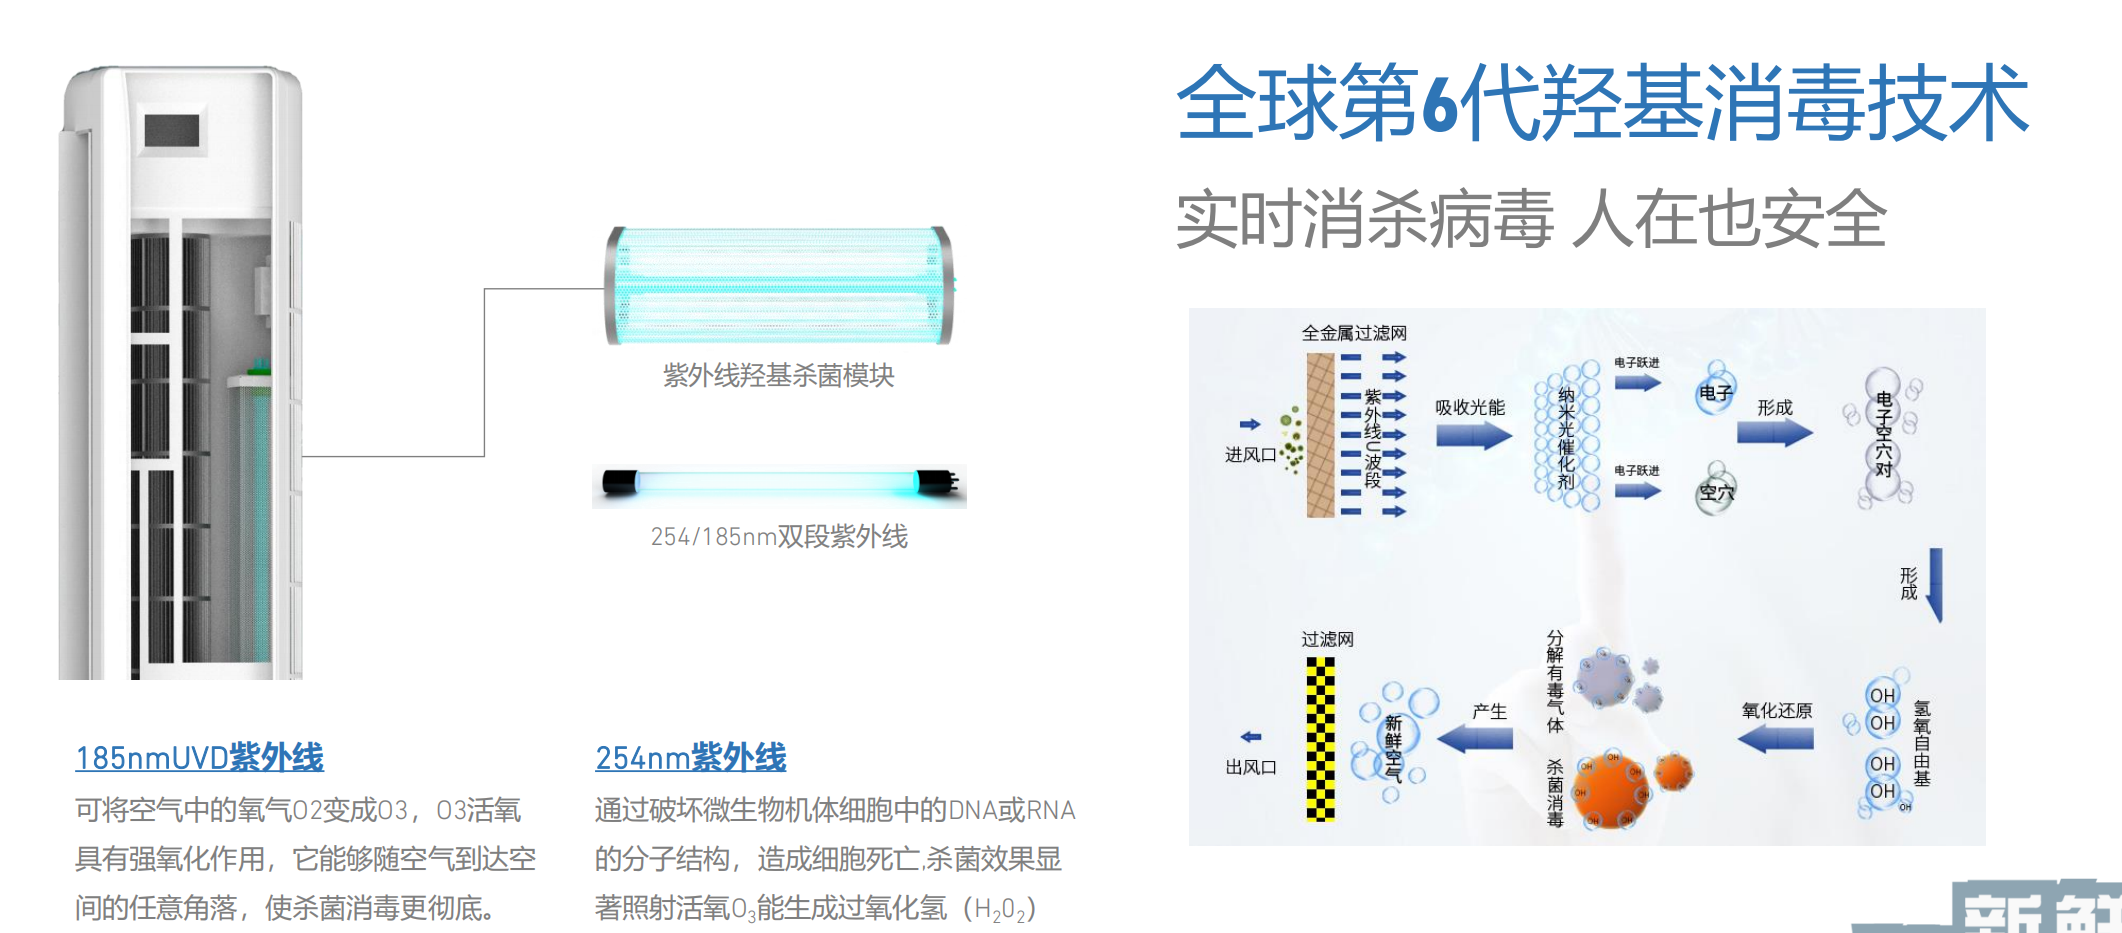 艾迪卫新风消毒机/空气消毒机 — 双波段紫外线羟基消毒技术